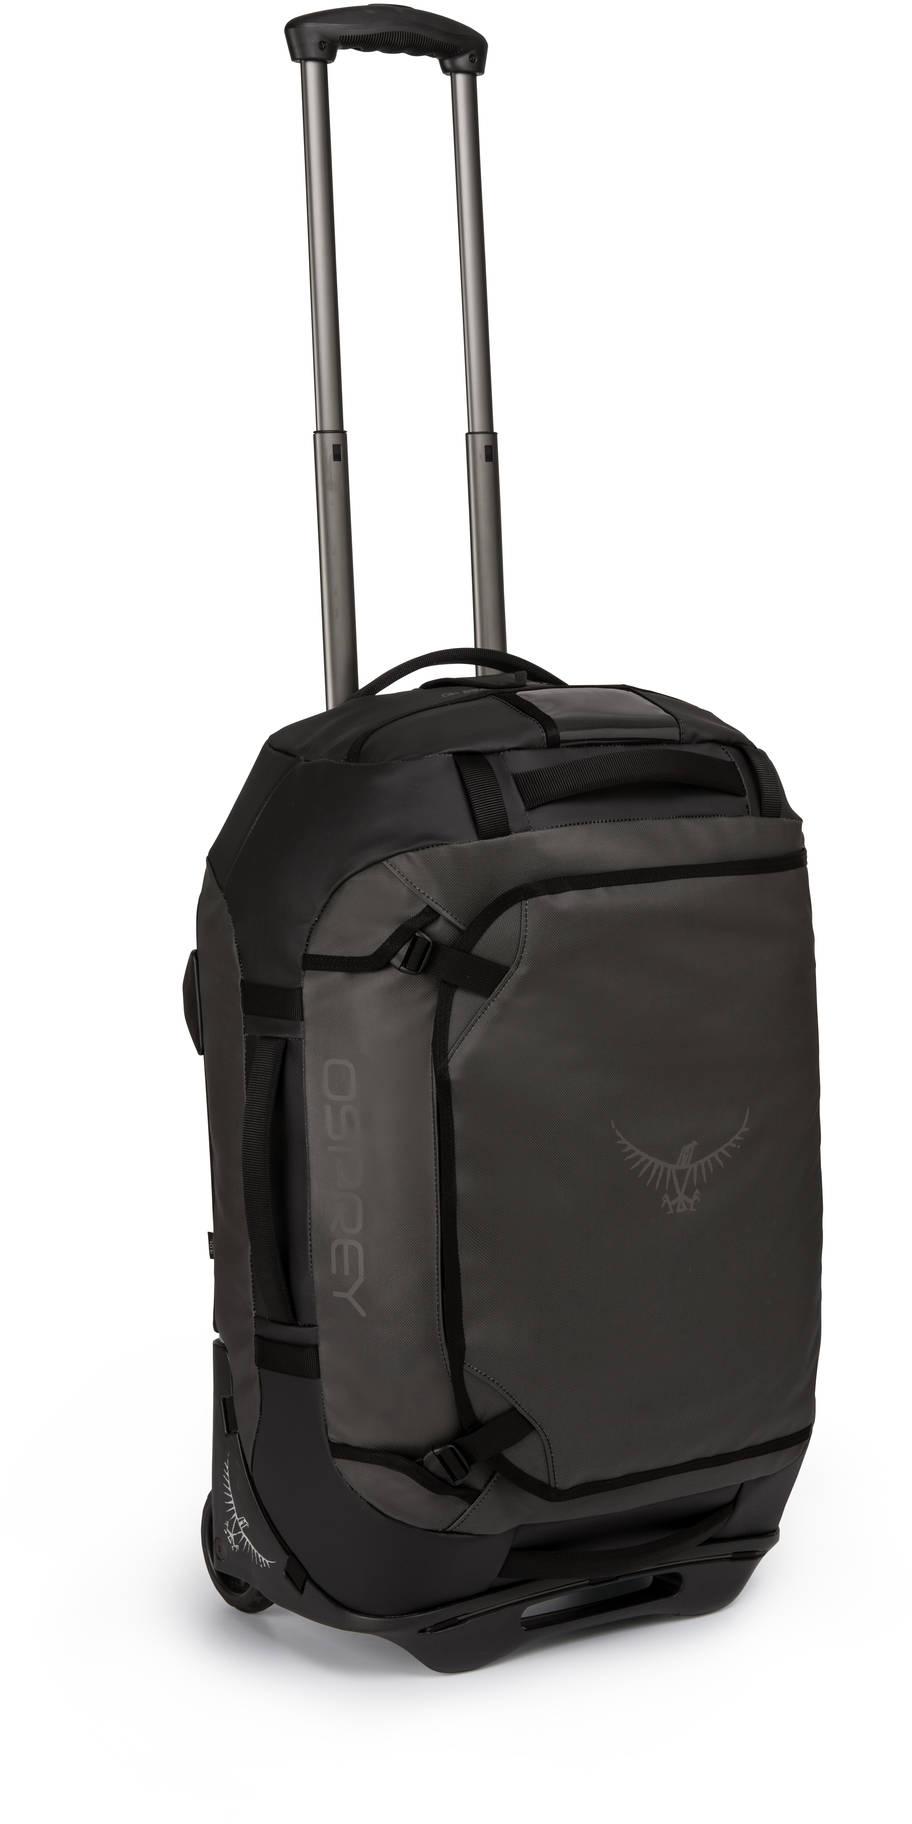 Osprey Rolling Transporter Travel Bag - Black